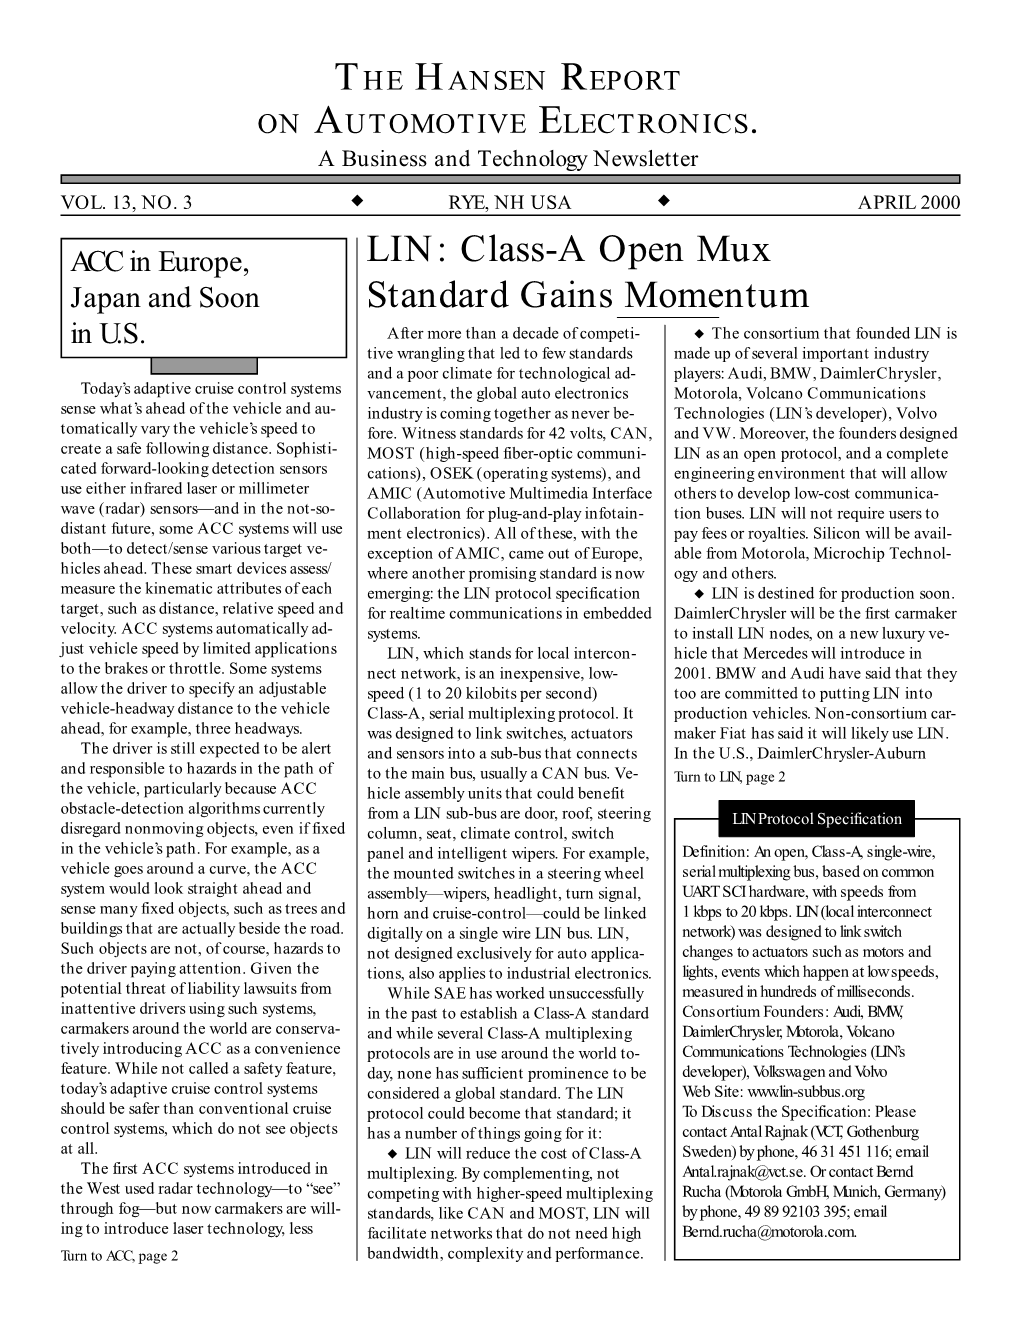 LIN: Class-A Open Mux Standard Gains Momentum